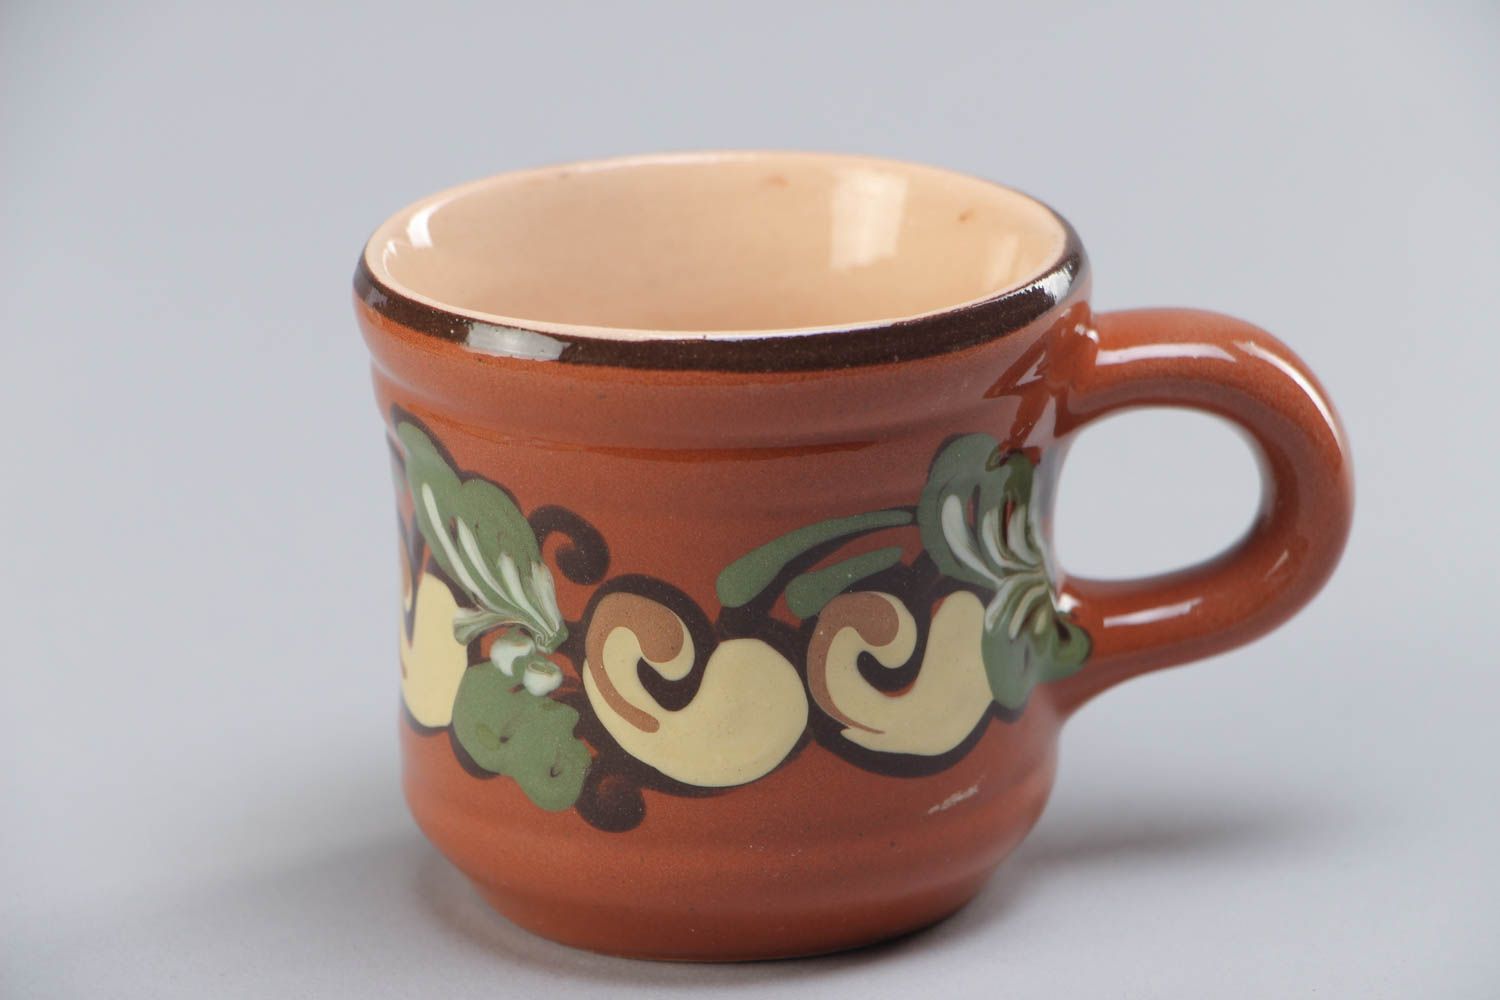 Petite tasse en céramique brun-vert peint aux motifs végétaux faite main 7 cl photo 2